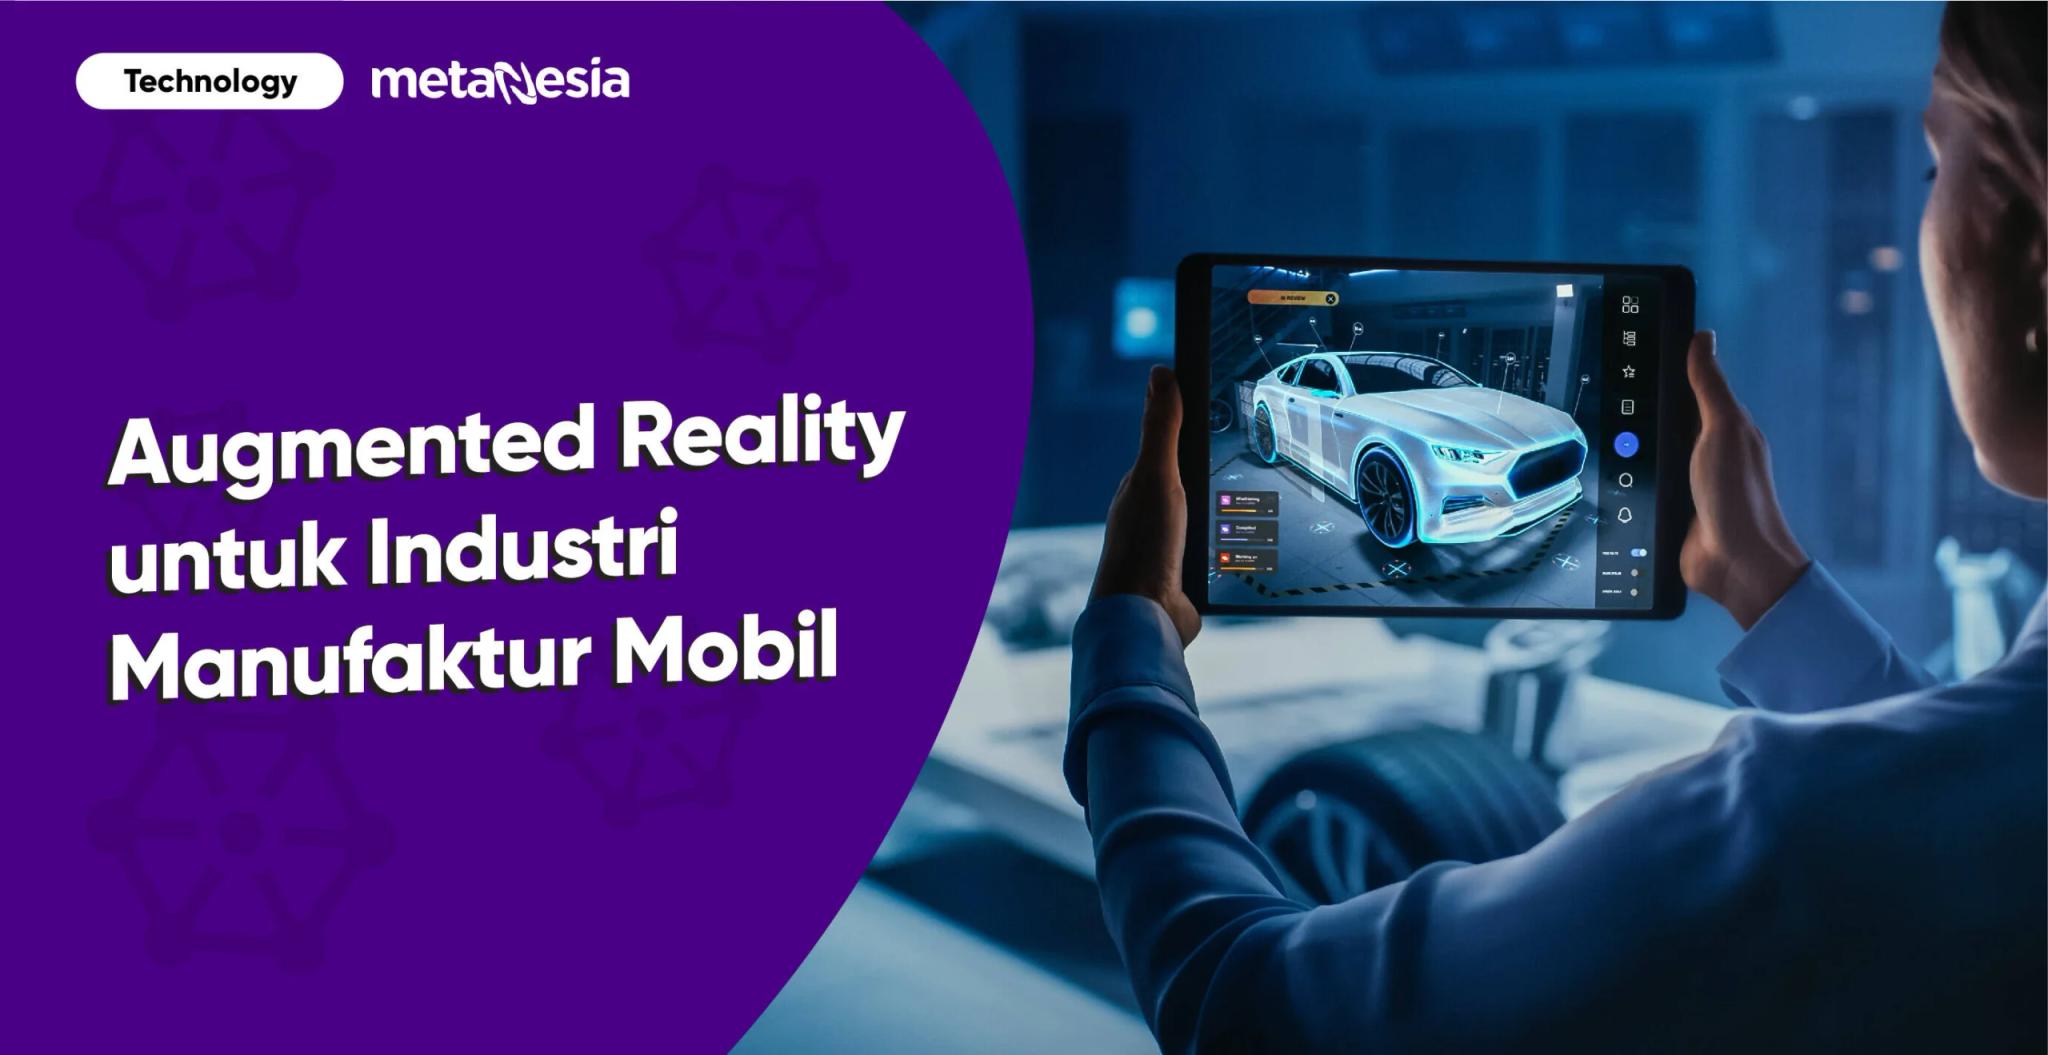 Melihat Bagaimana Augmented Reality Diterapkan dalam Industri Otomotif